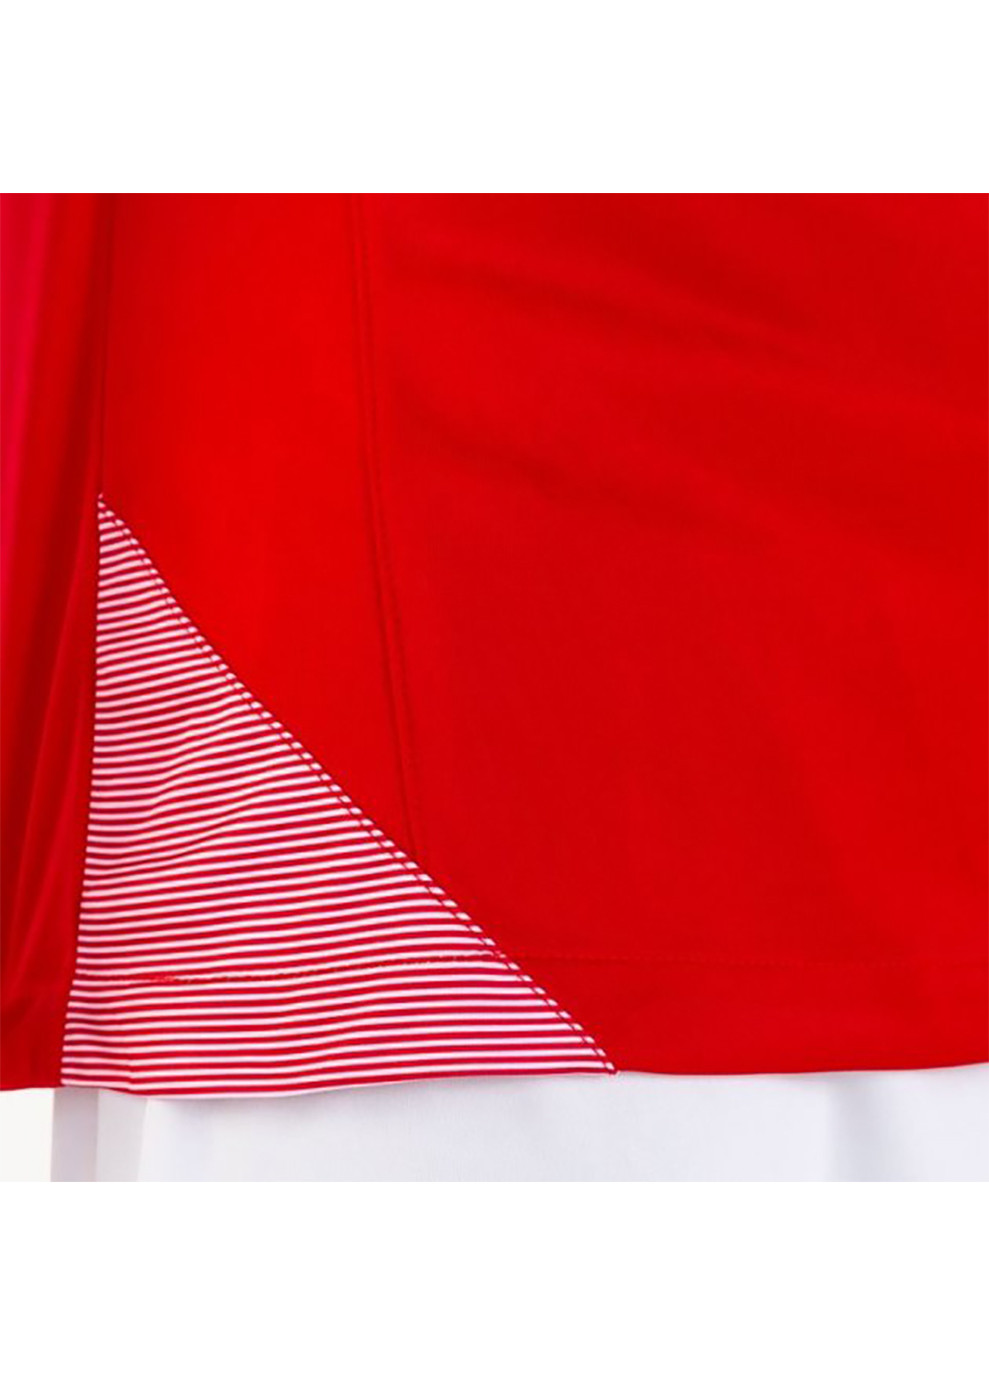 Комбинированная демисезонная футболка детская essential ii красный белый 100-117 Joma